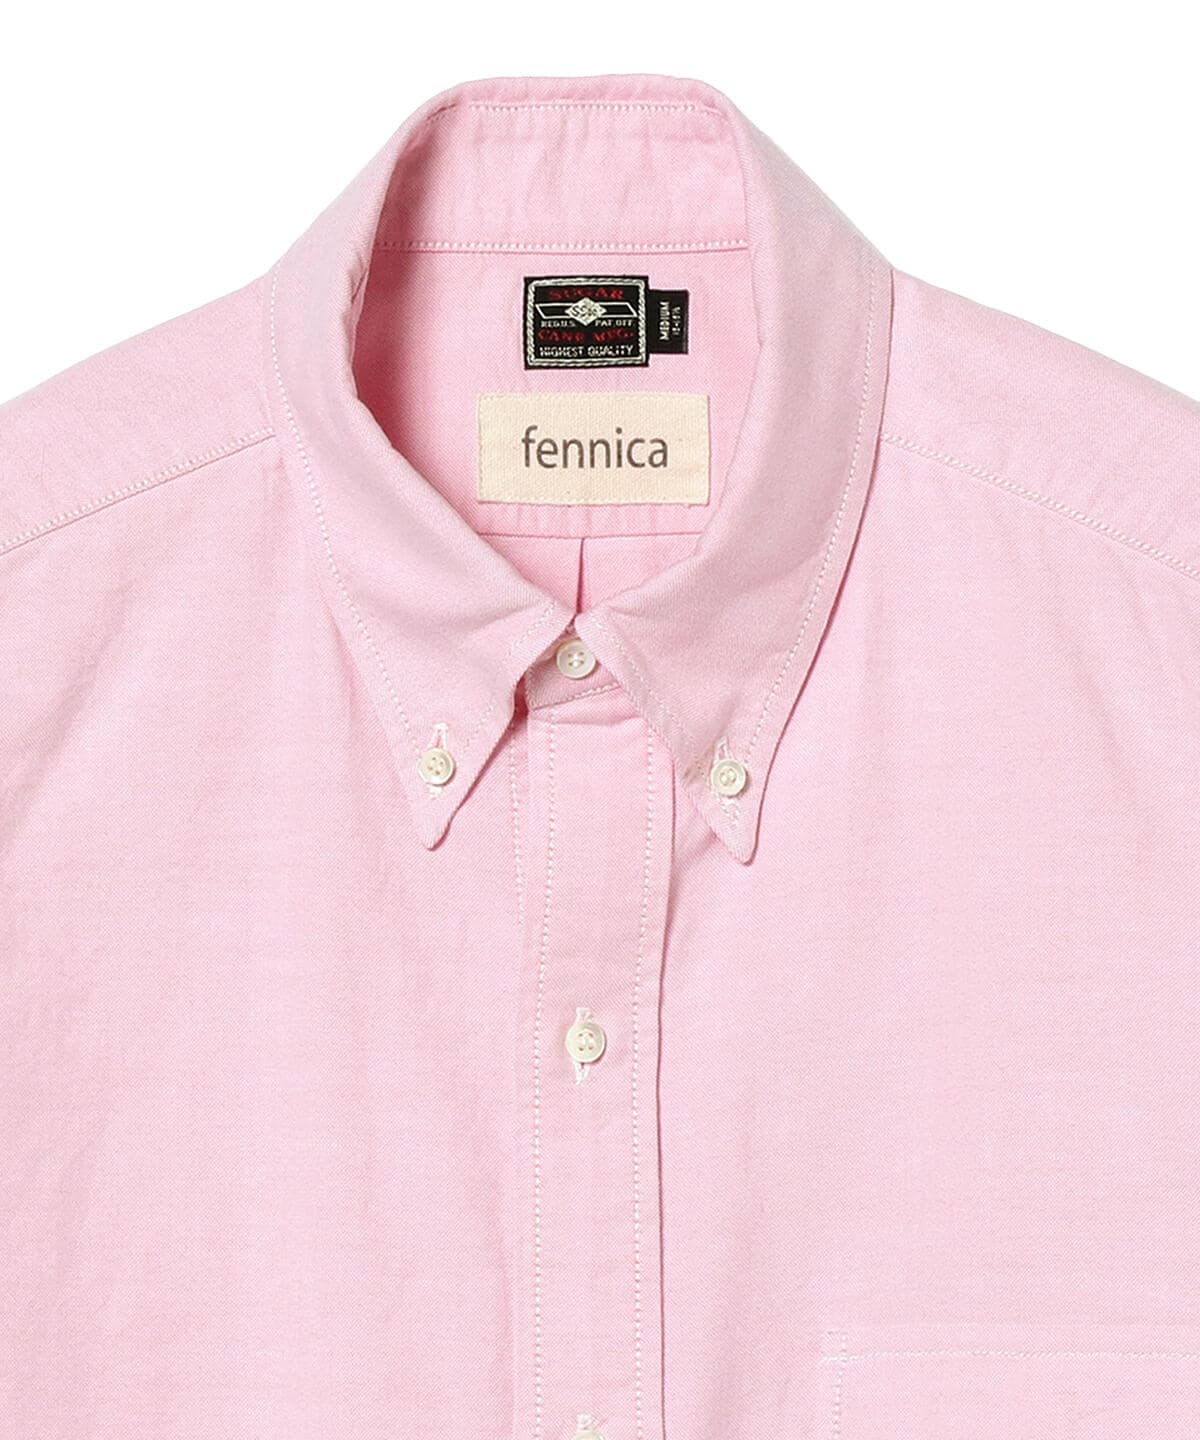 SUGAR CANE × fennica / 別注 College Button Down Shirt Oxford